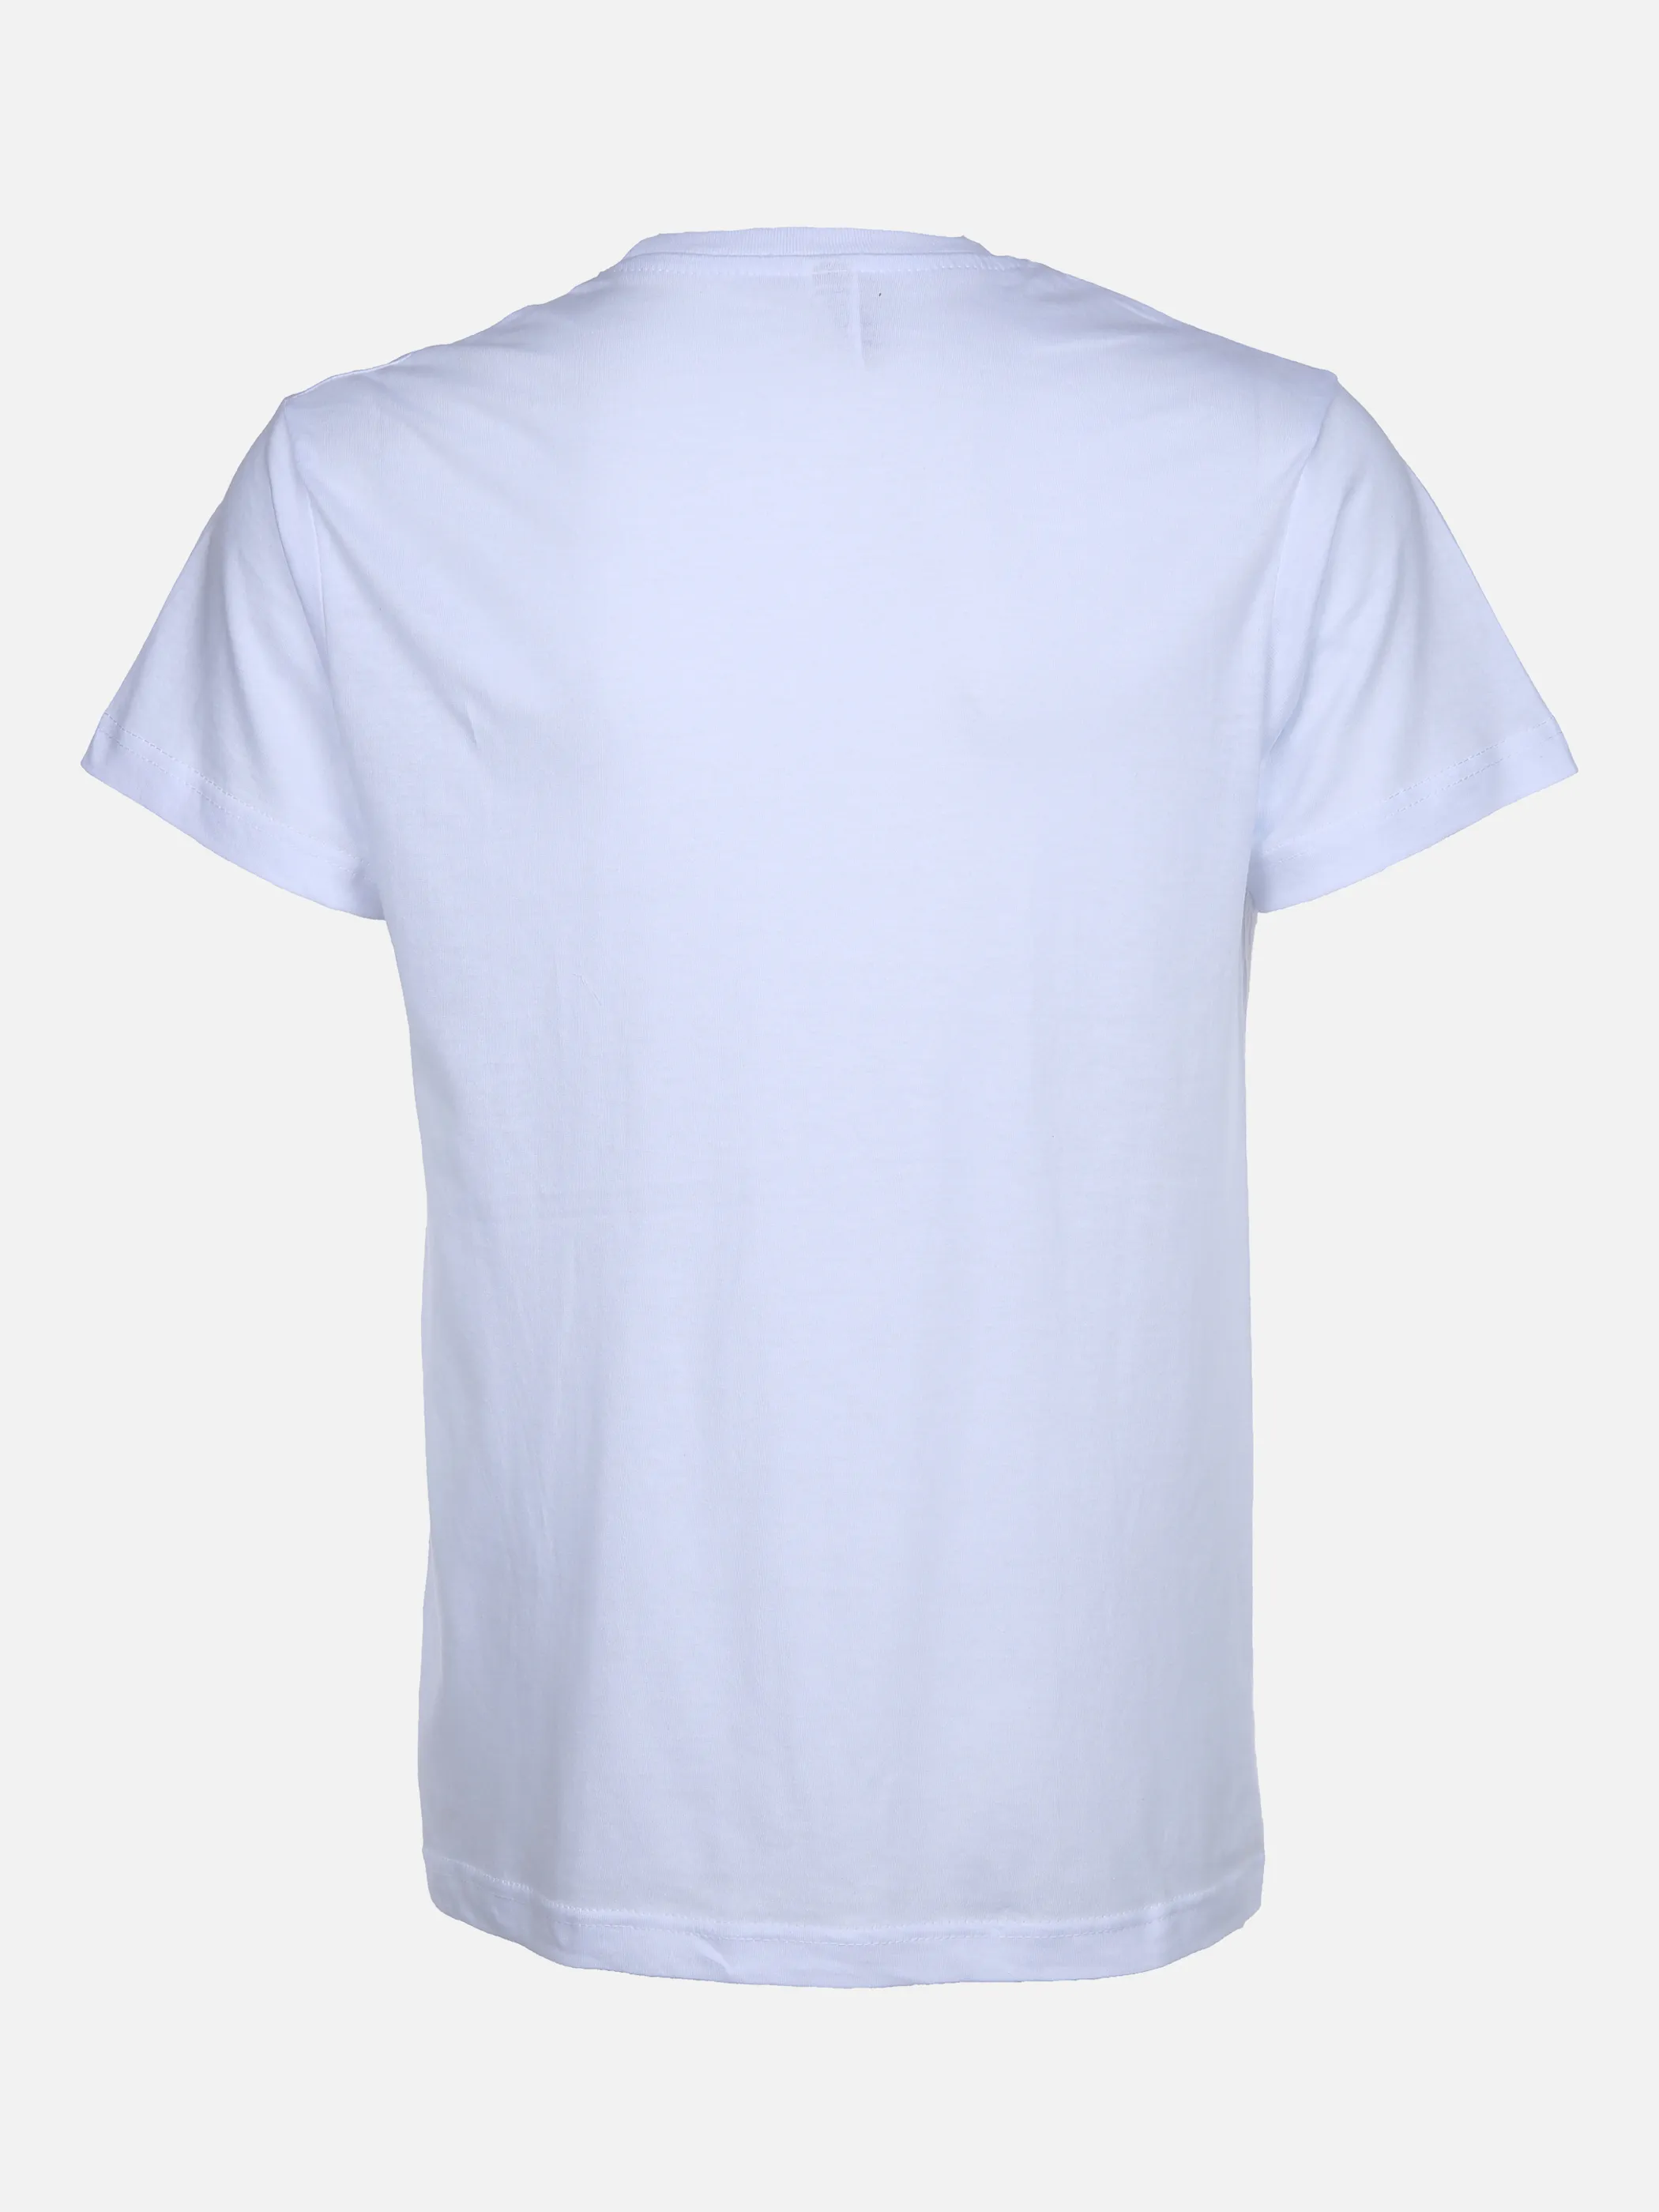 Worker He. T-Shirt 5er Pack Weiß 859912 WEIß 2